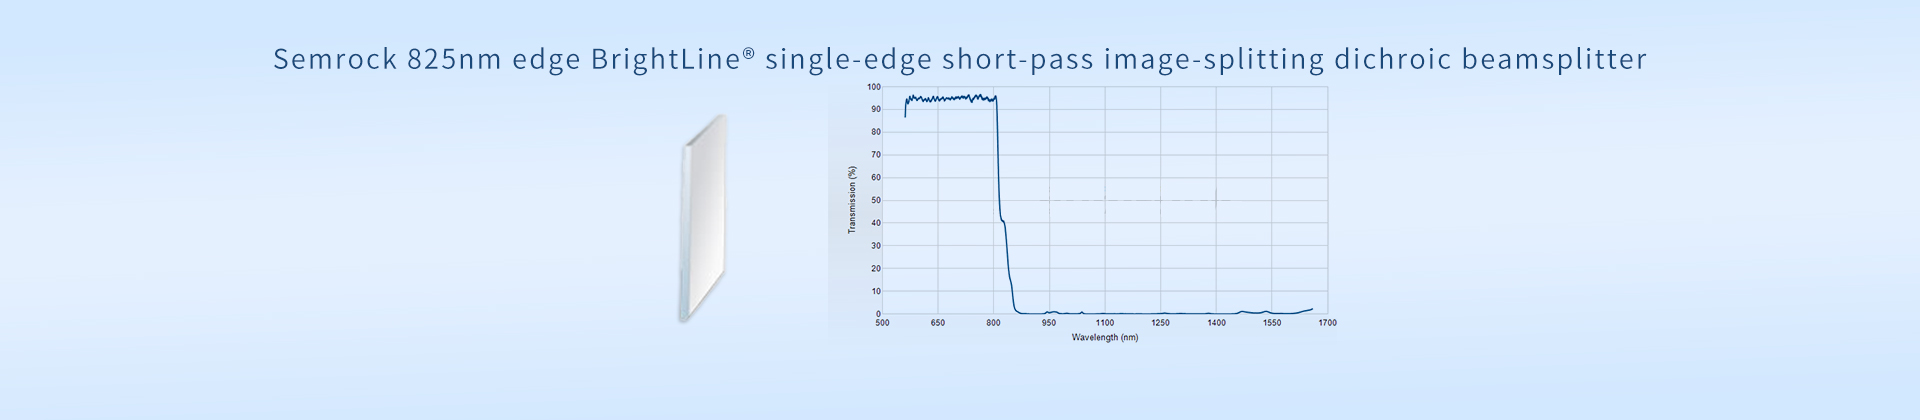 Semrock 825nm edge BrightLine® single-edge short-pass image-splitting dichroic beamsplitter